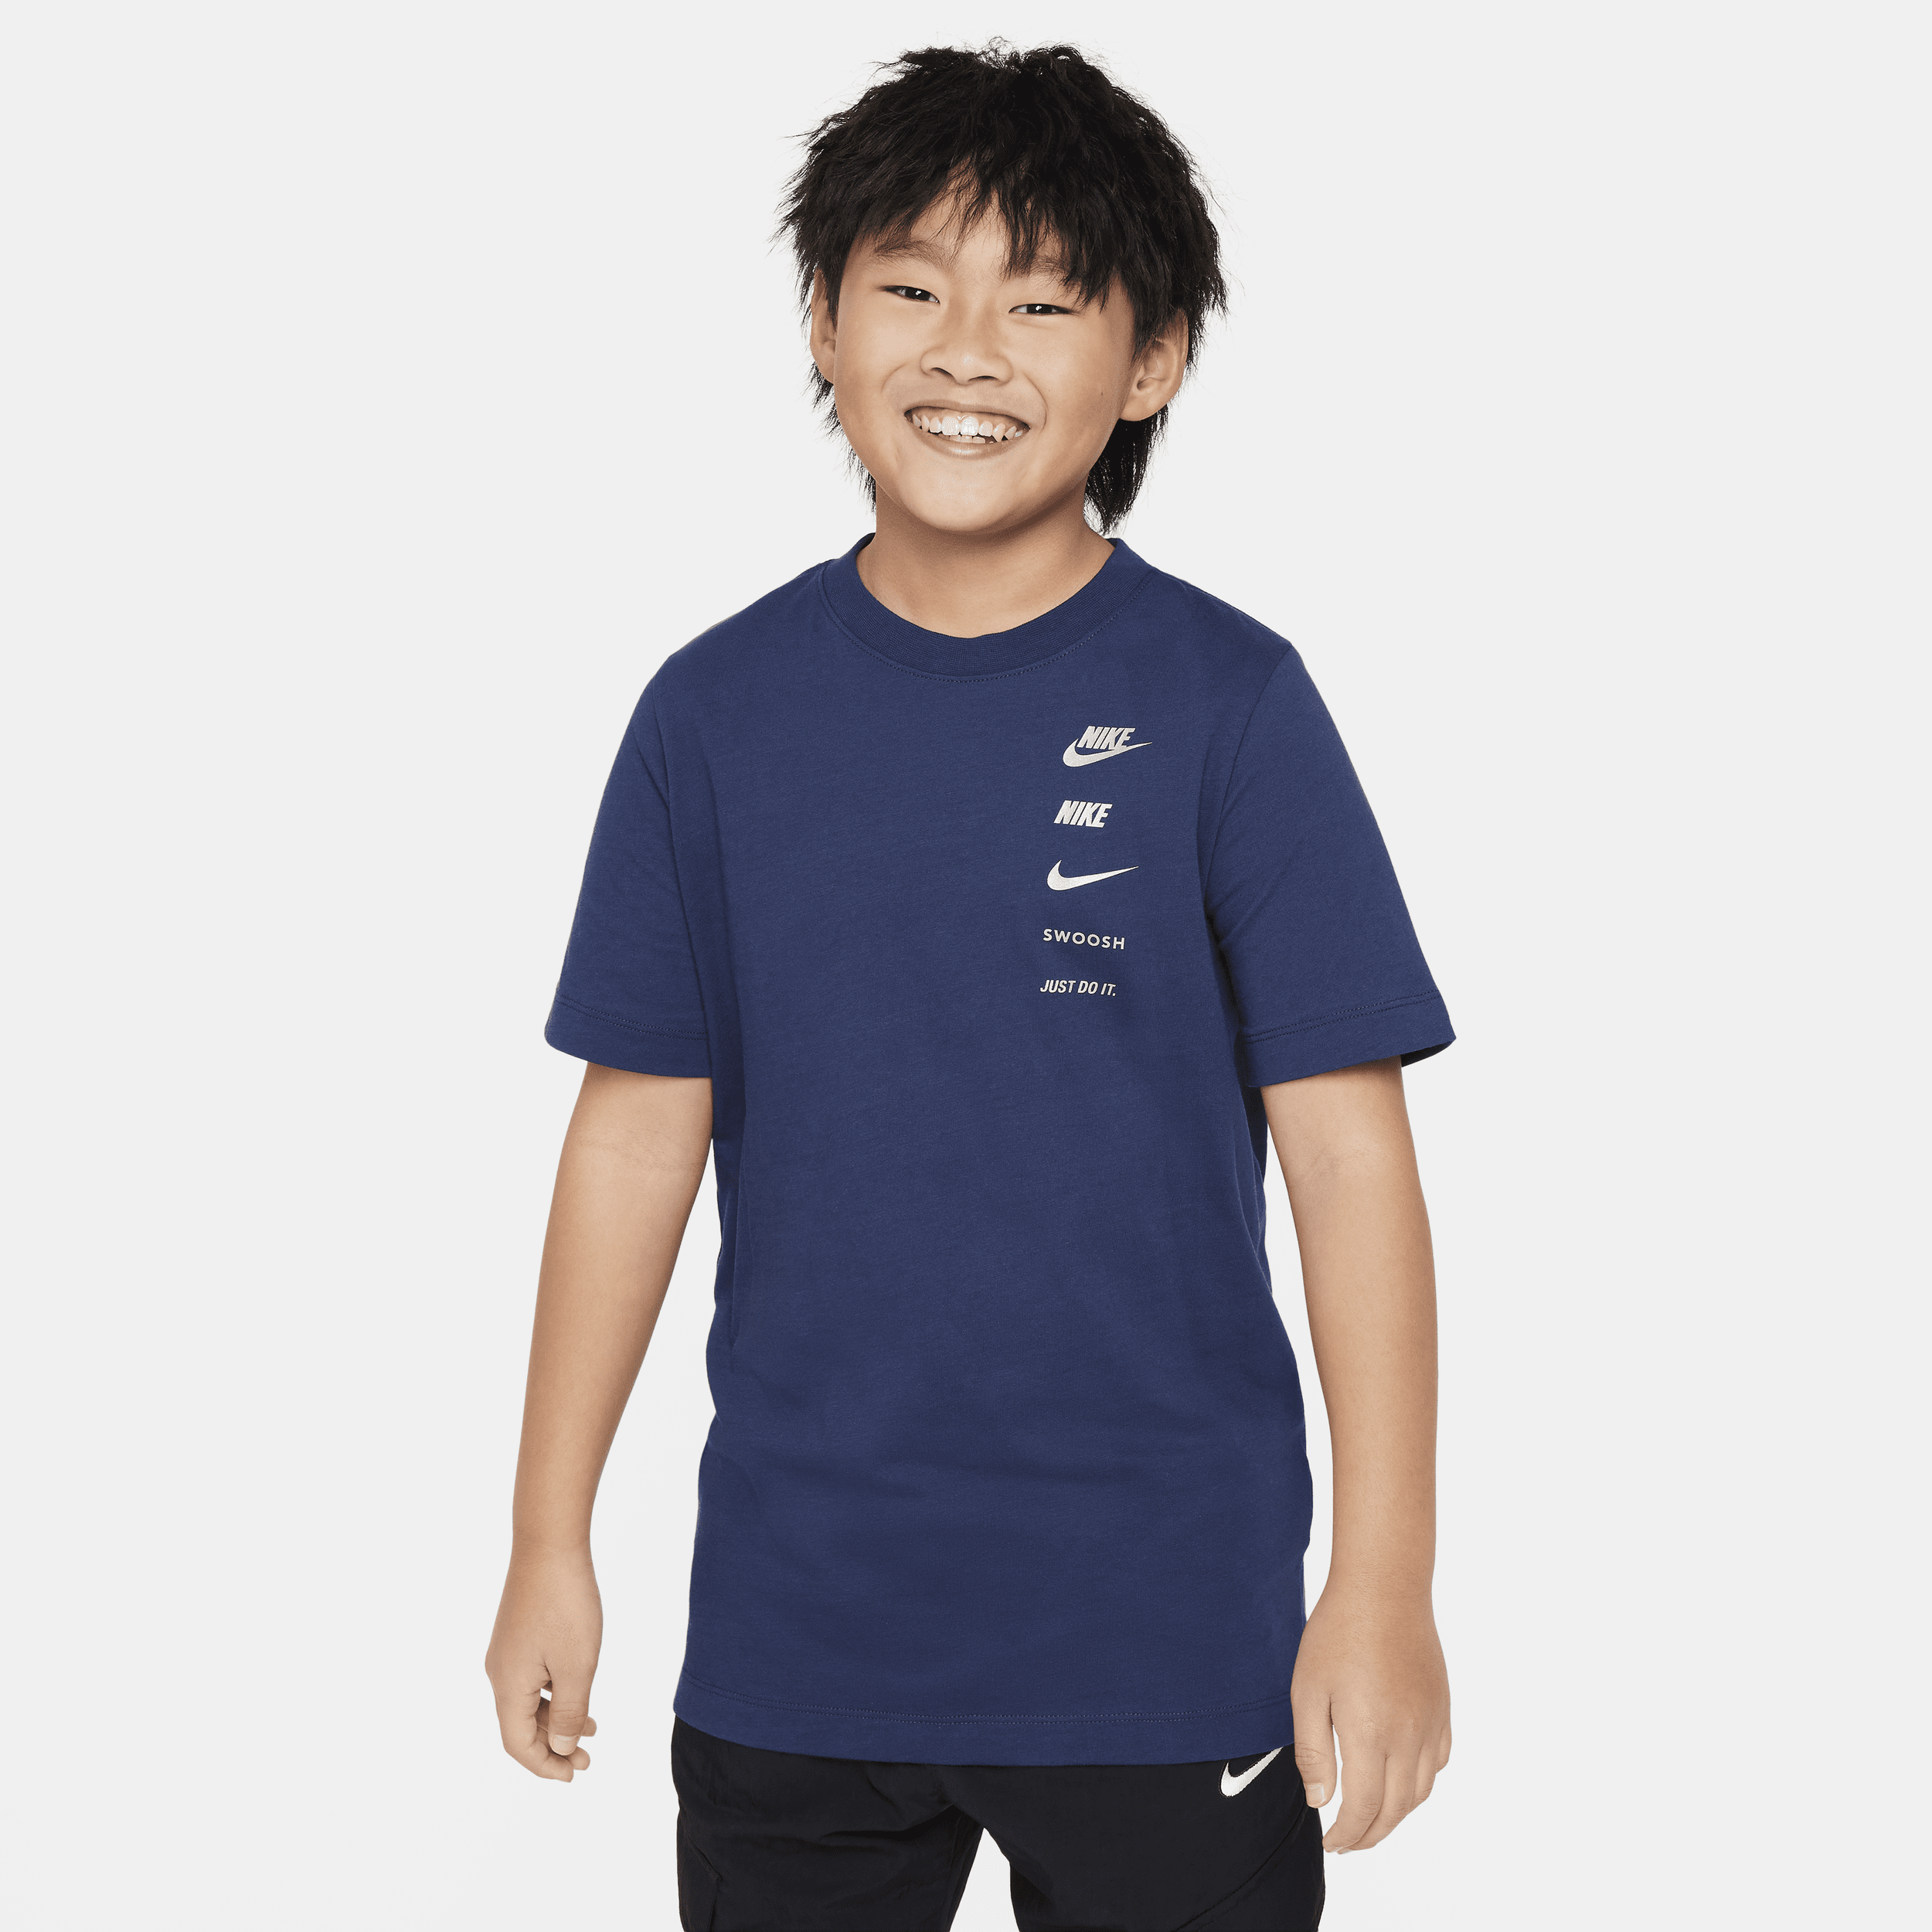 Grafisk Nike Sportswear-T-shirt til større børn (drenge) - blå